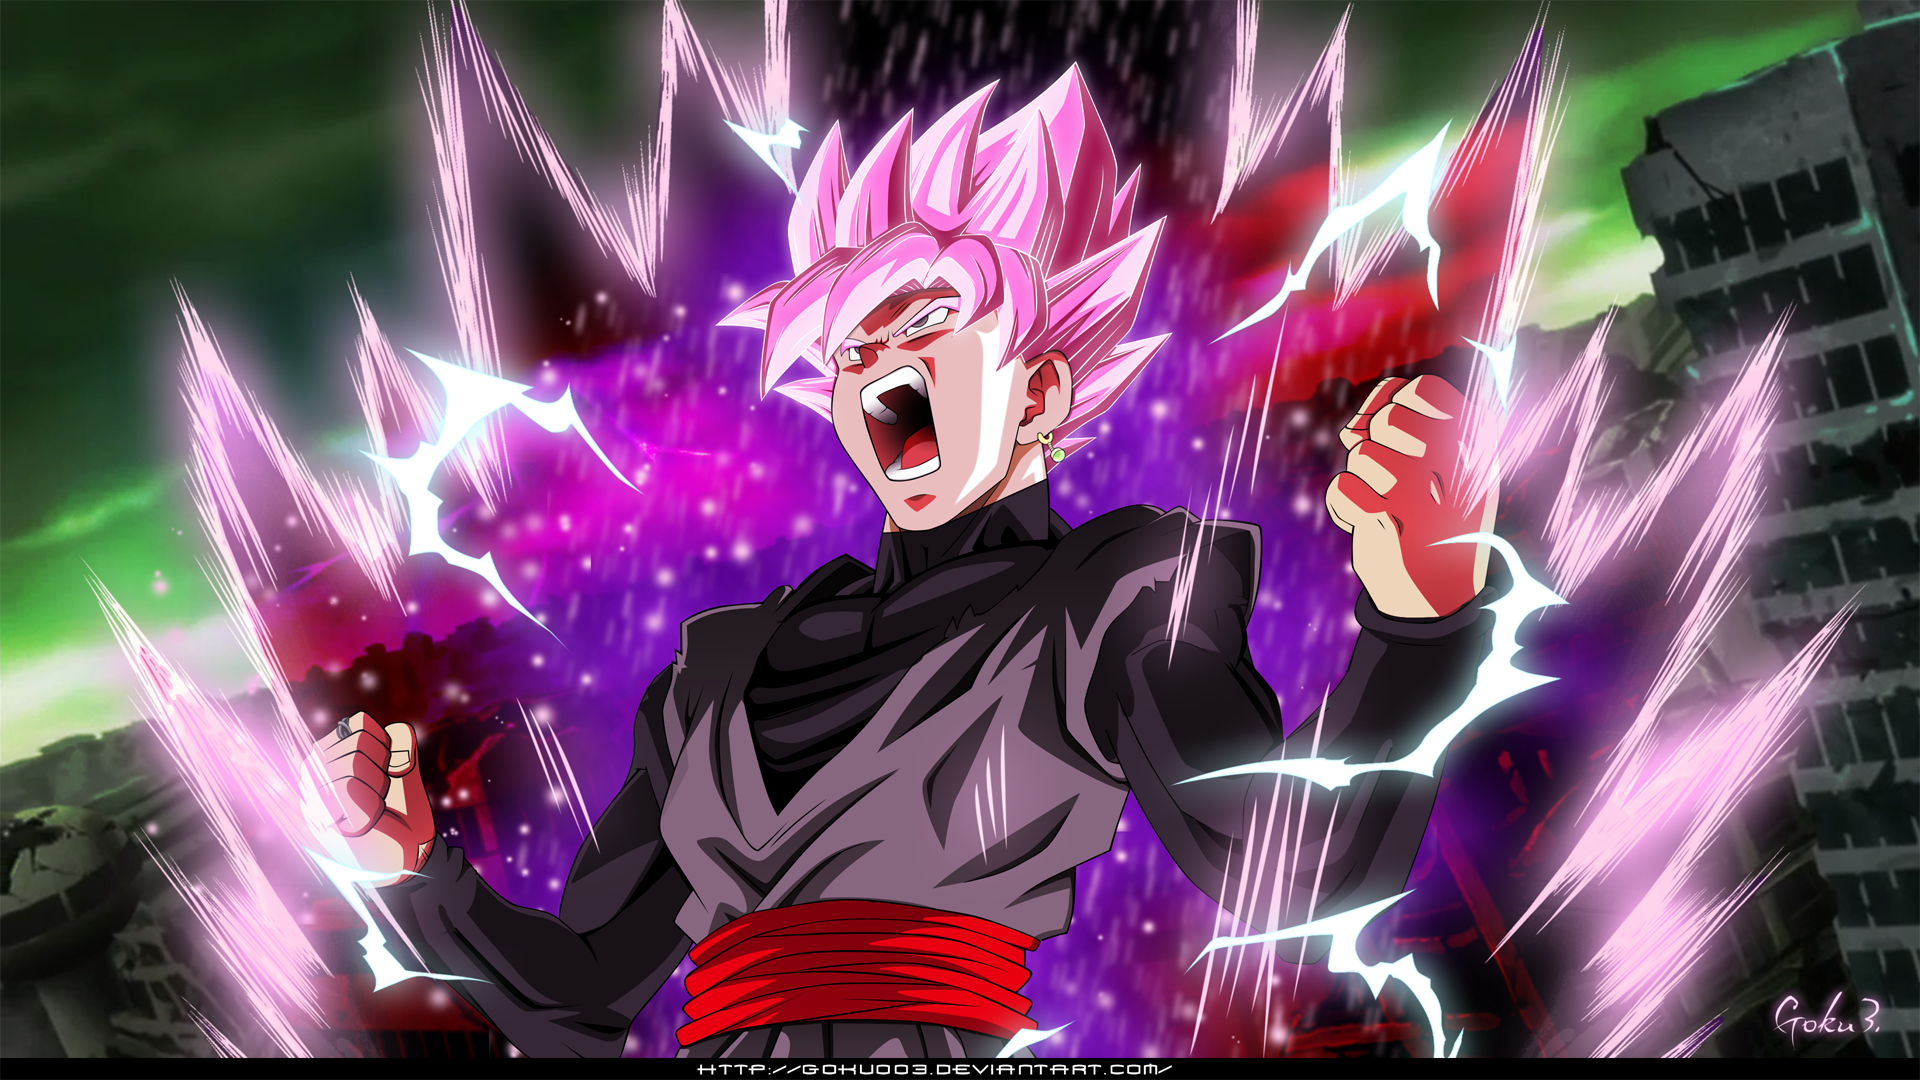 Đen Goku Super Saiyan Rose by goku003 sẽ khiến bạn ngạc nhiên với sức mạnh vượt trội. Hình nền này sử dụng màu hồng tuyệt đẹp để bổ sung thêm tính cách đặc trưng của Super Saiyan Rose. Tải ngay để cảm nhận sự hoàn hảo của hình nền này.